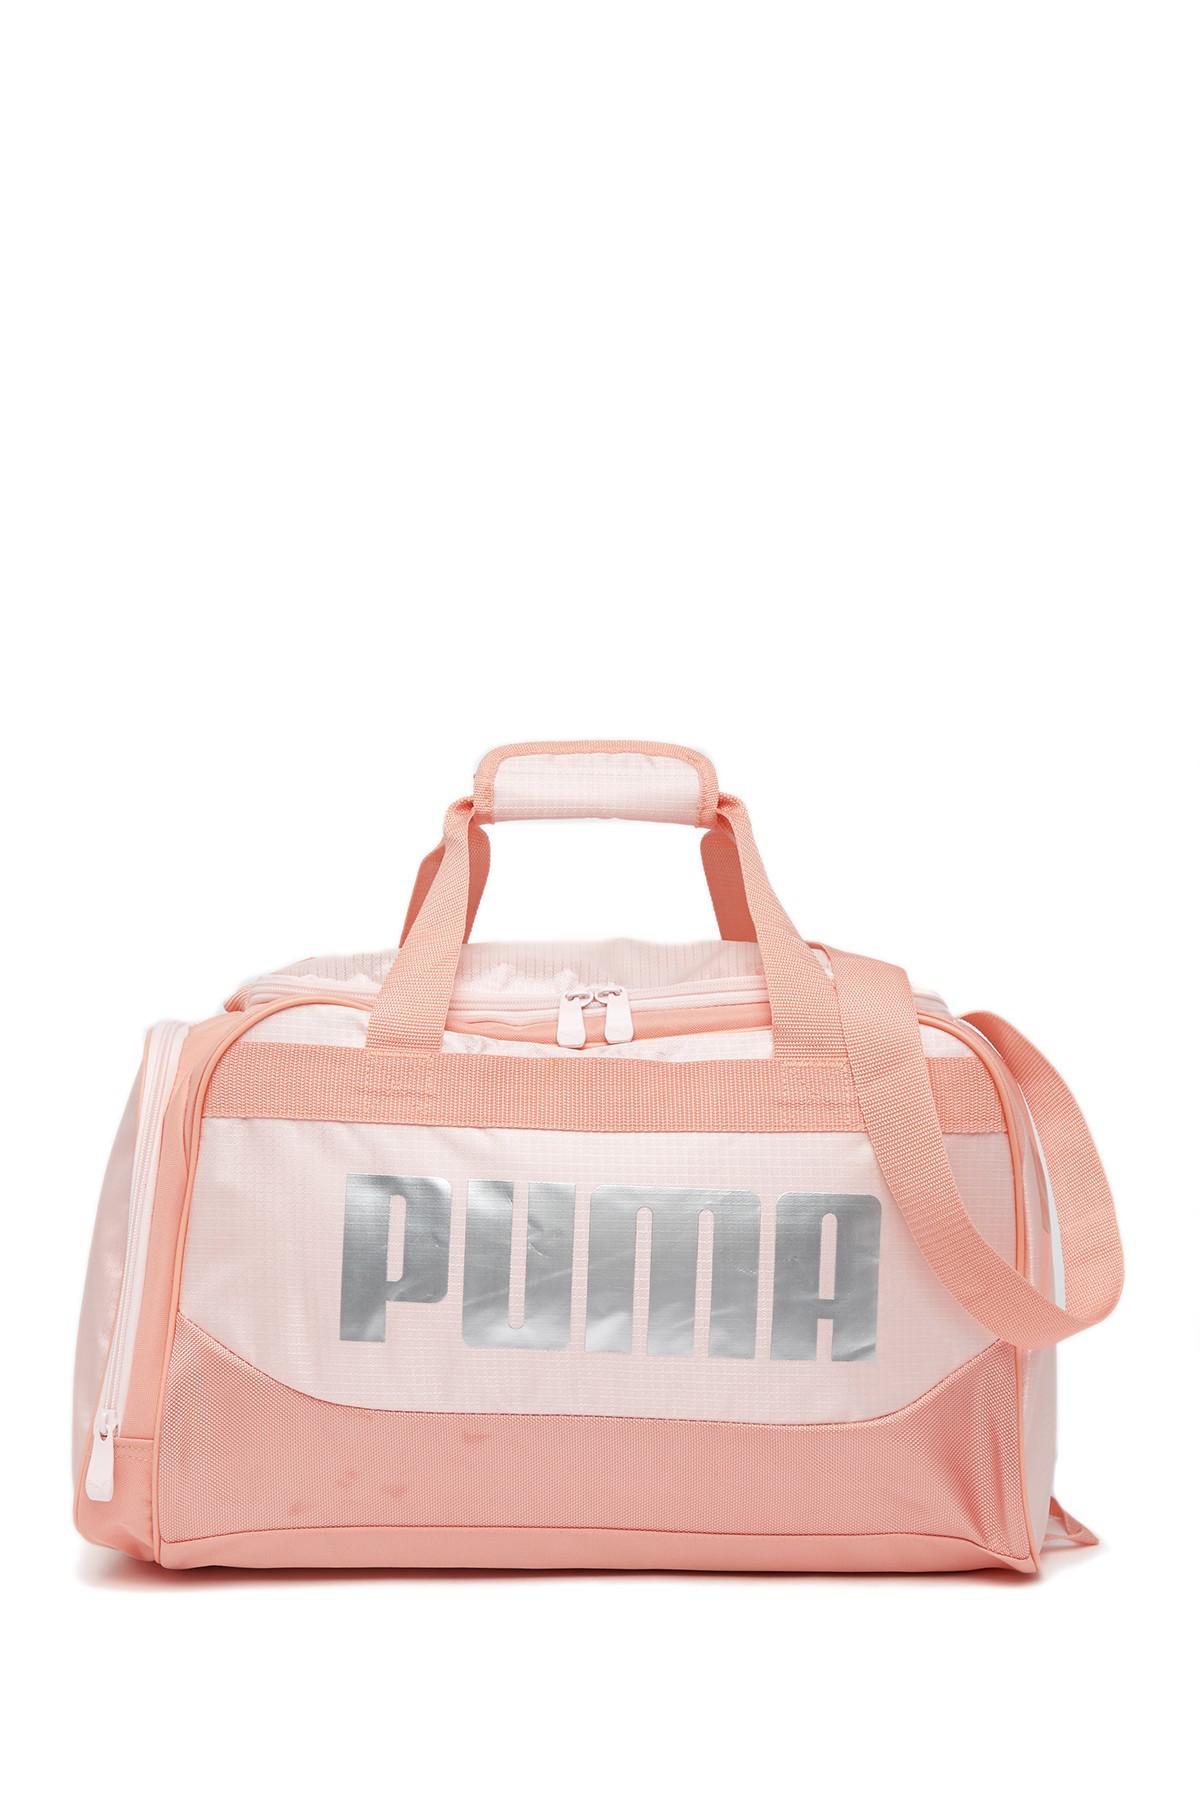 puma duffle bag pink